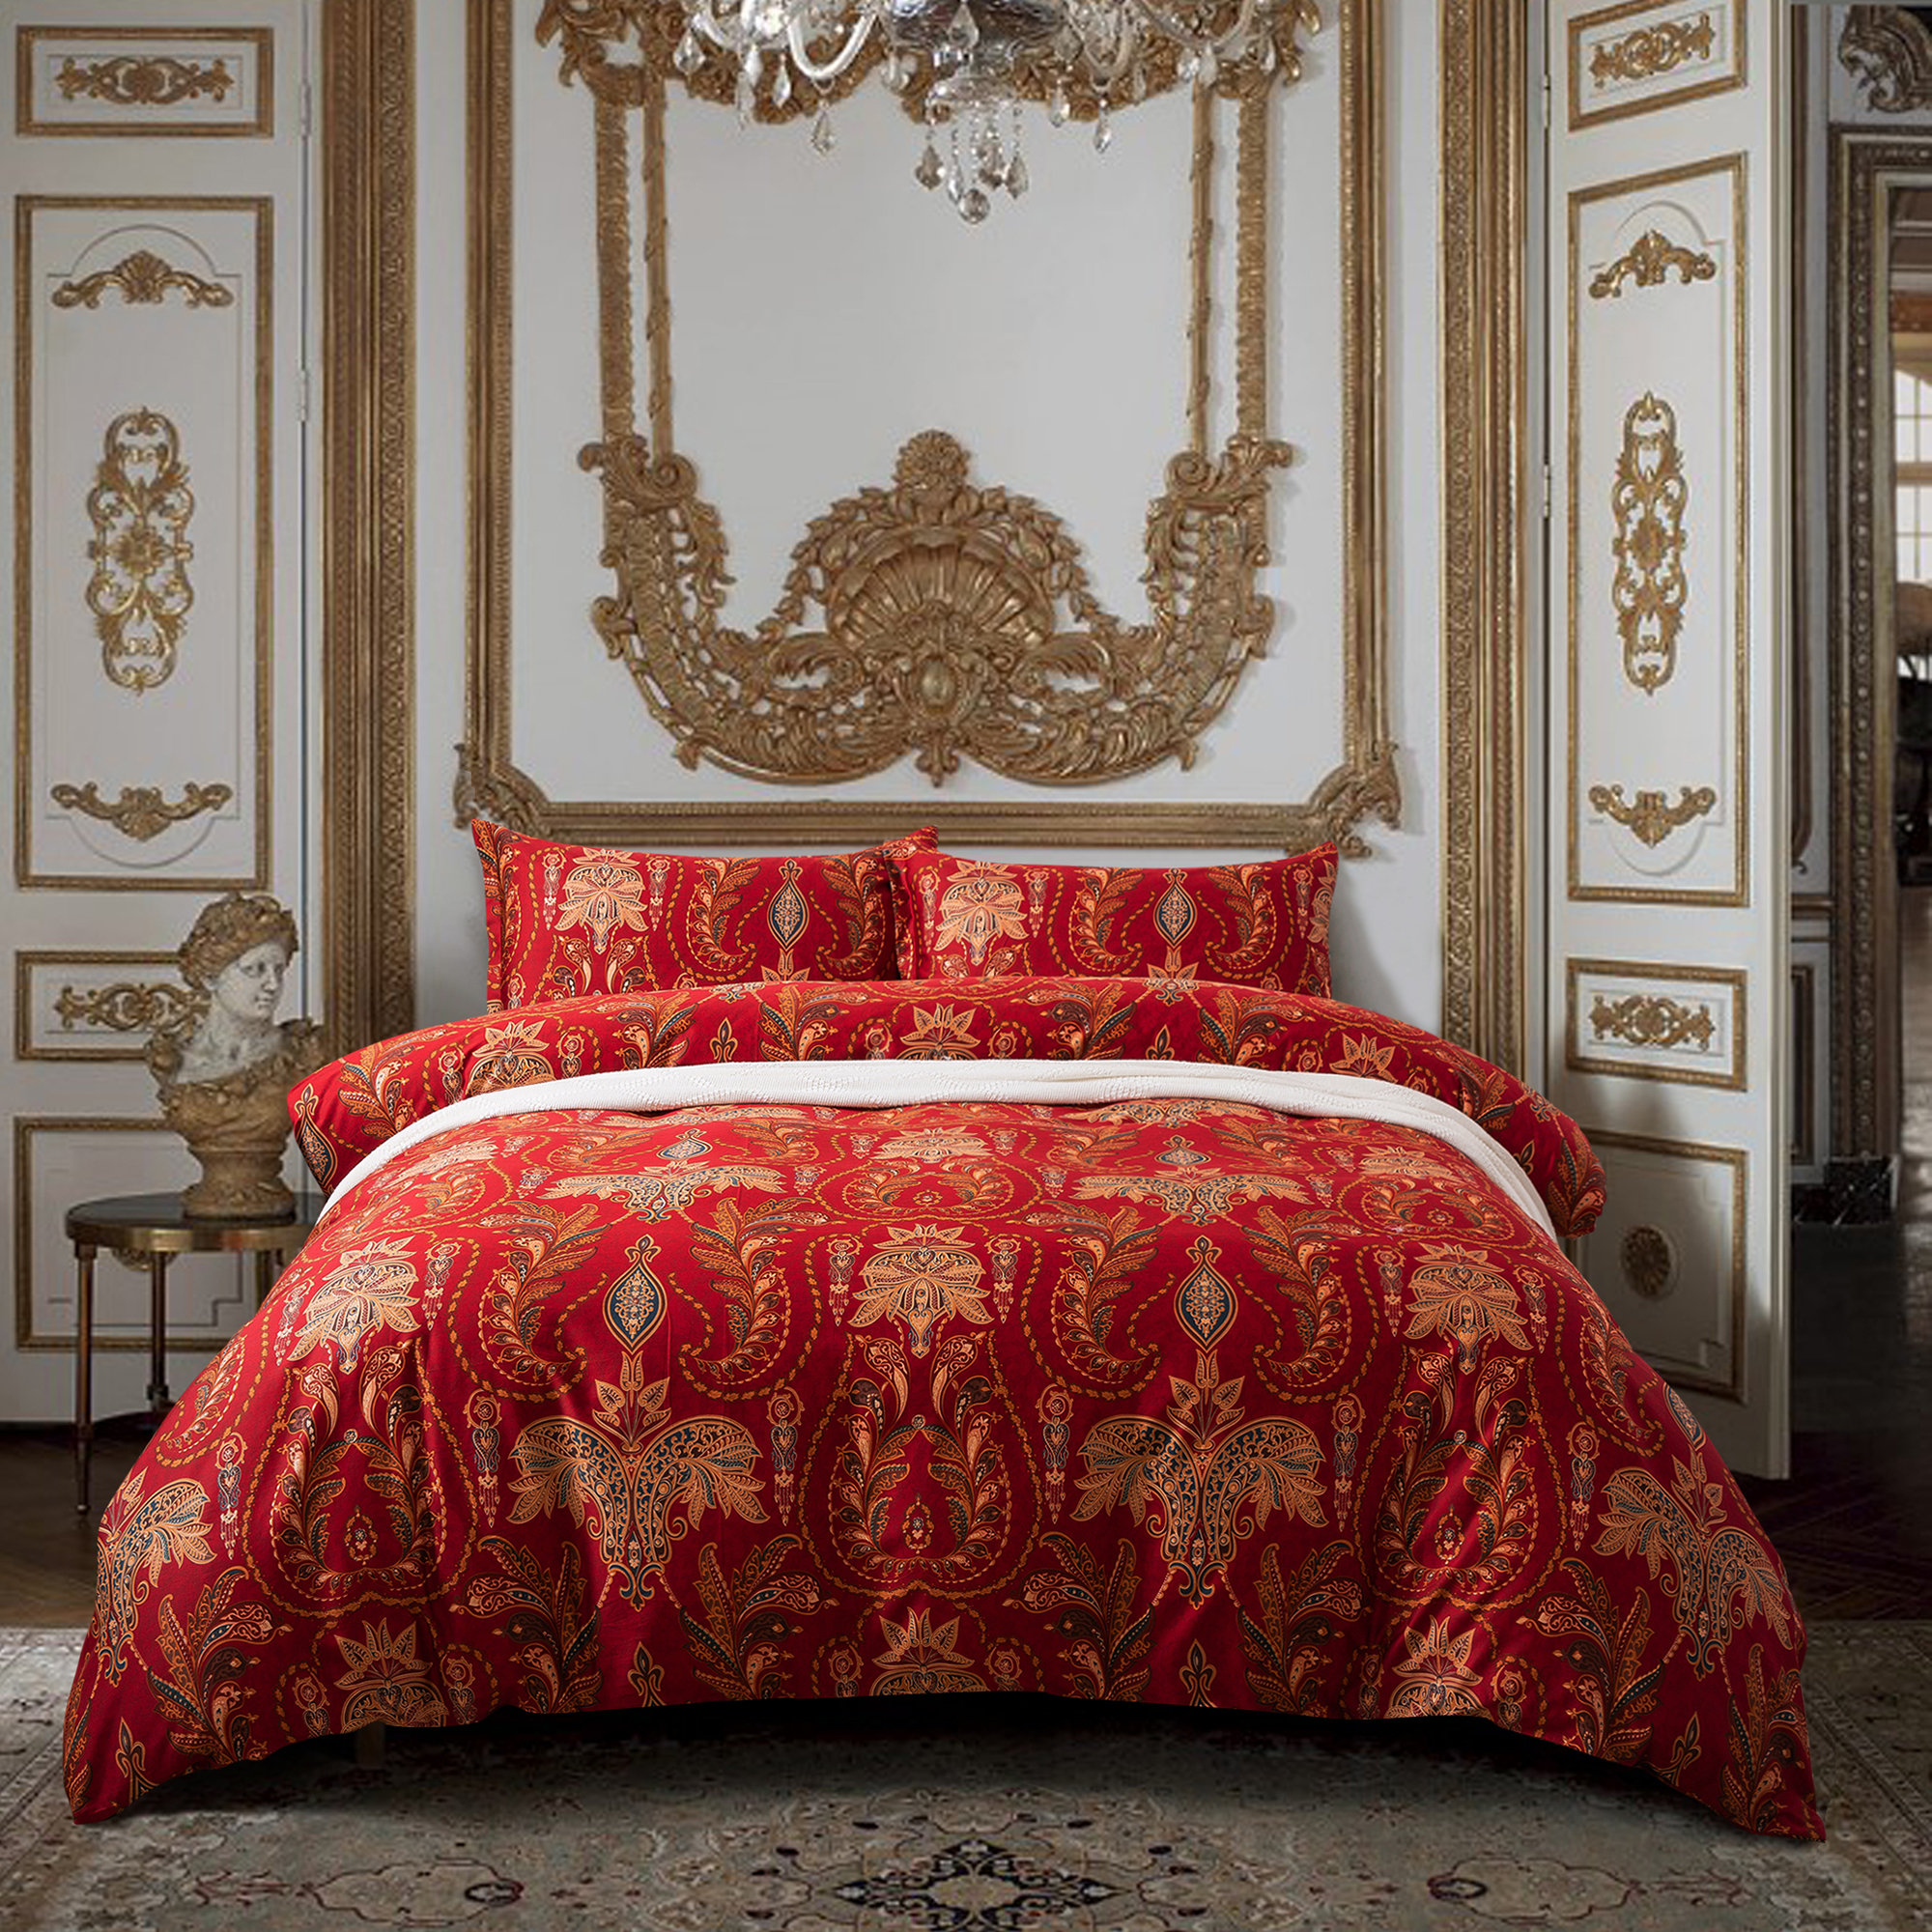 Italian Paisley Style Bedding 3pc Duvet, Brocade Duvet Cover